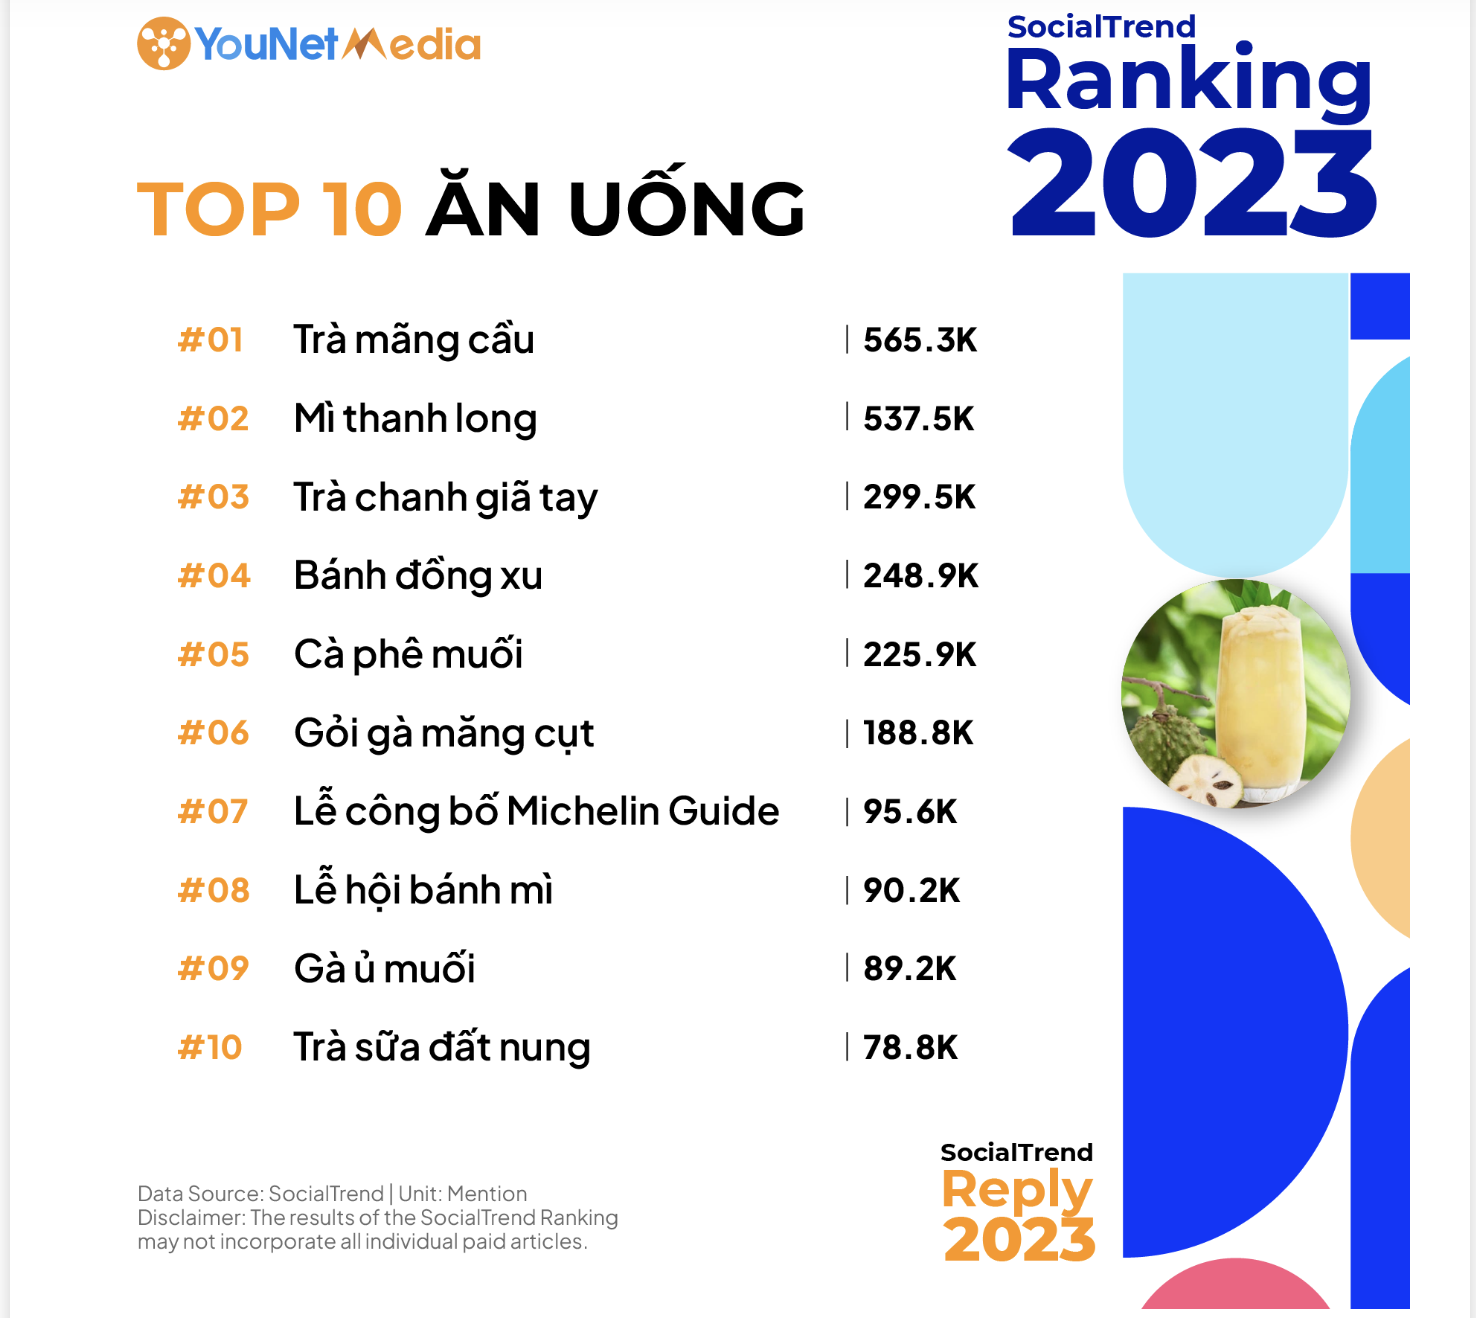 Bảng xếp hạng top 10 các trend 2023 lĩnh vực ẩm thực - Ảnh: YouNet Media